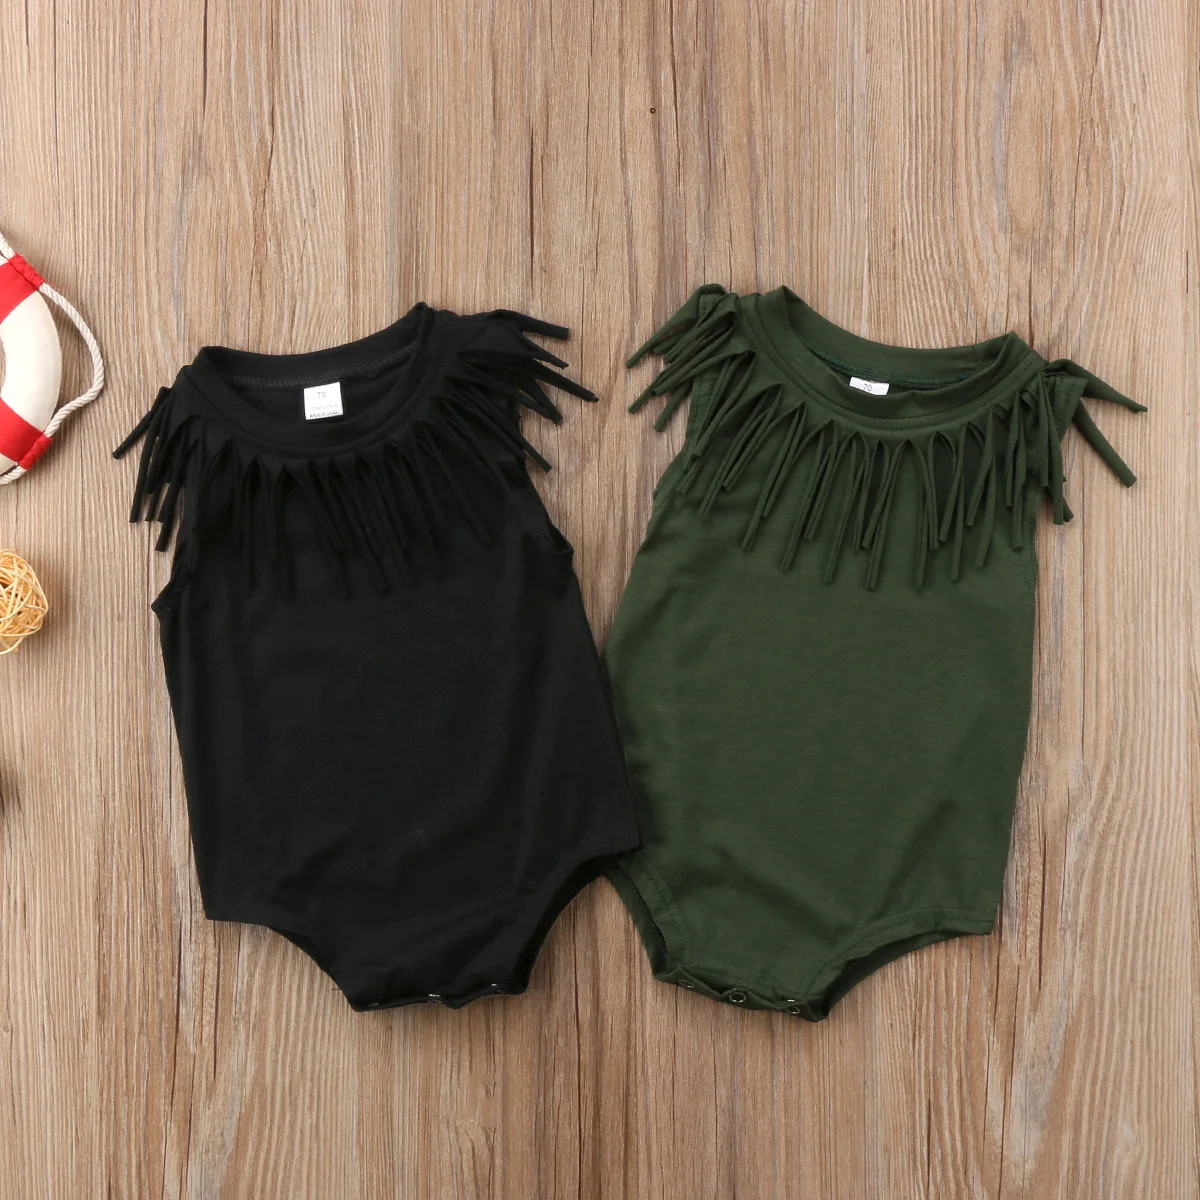 Одежда для маленьких девочек; винтажный комбинезон с кисточками для девочки преддошкольного возраста; цвет черный, армейский, зеленый; хлопковые комбинезоны; летняя одежда для маленьких девочек